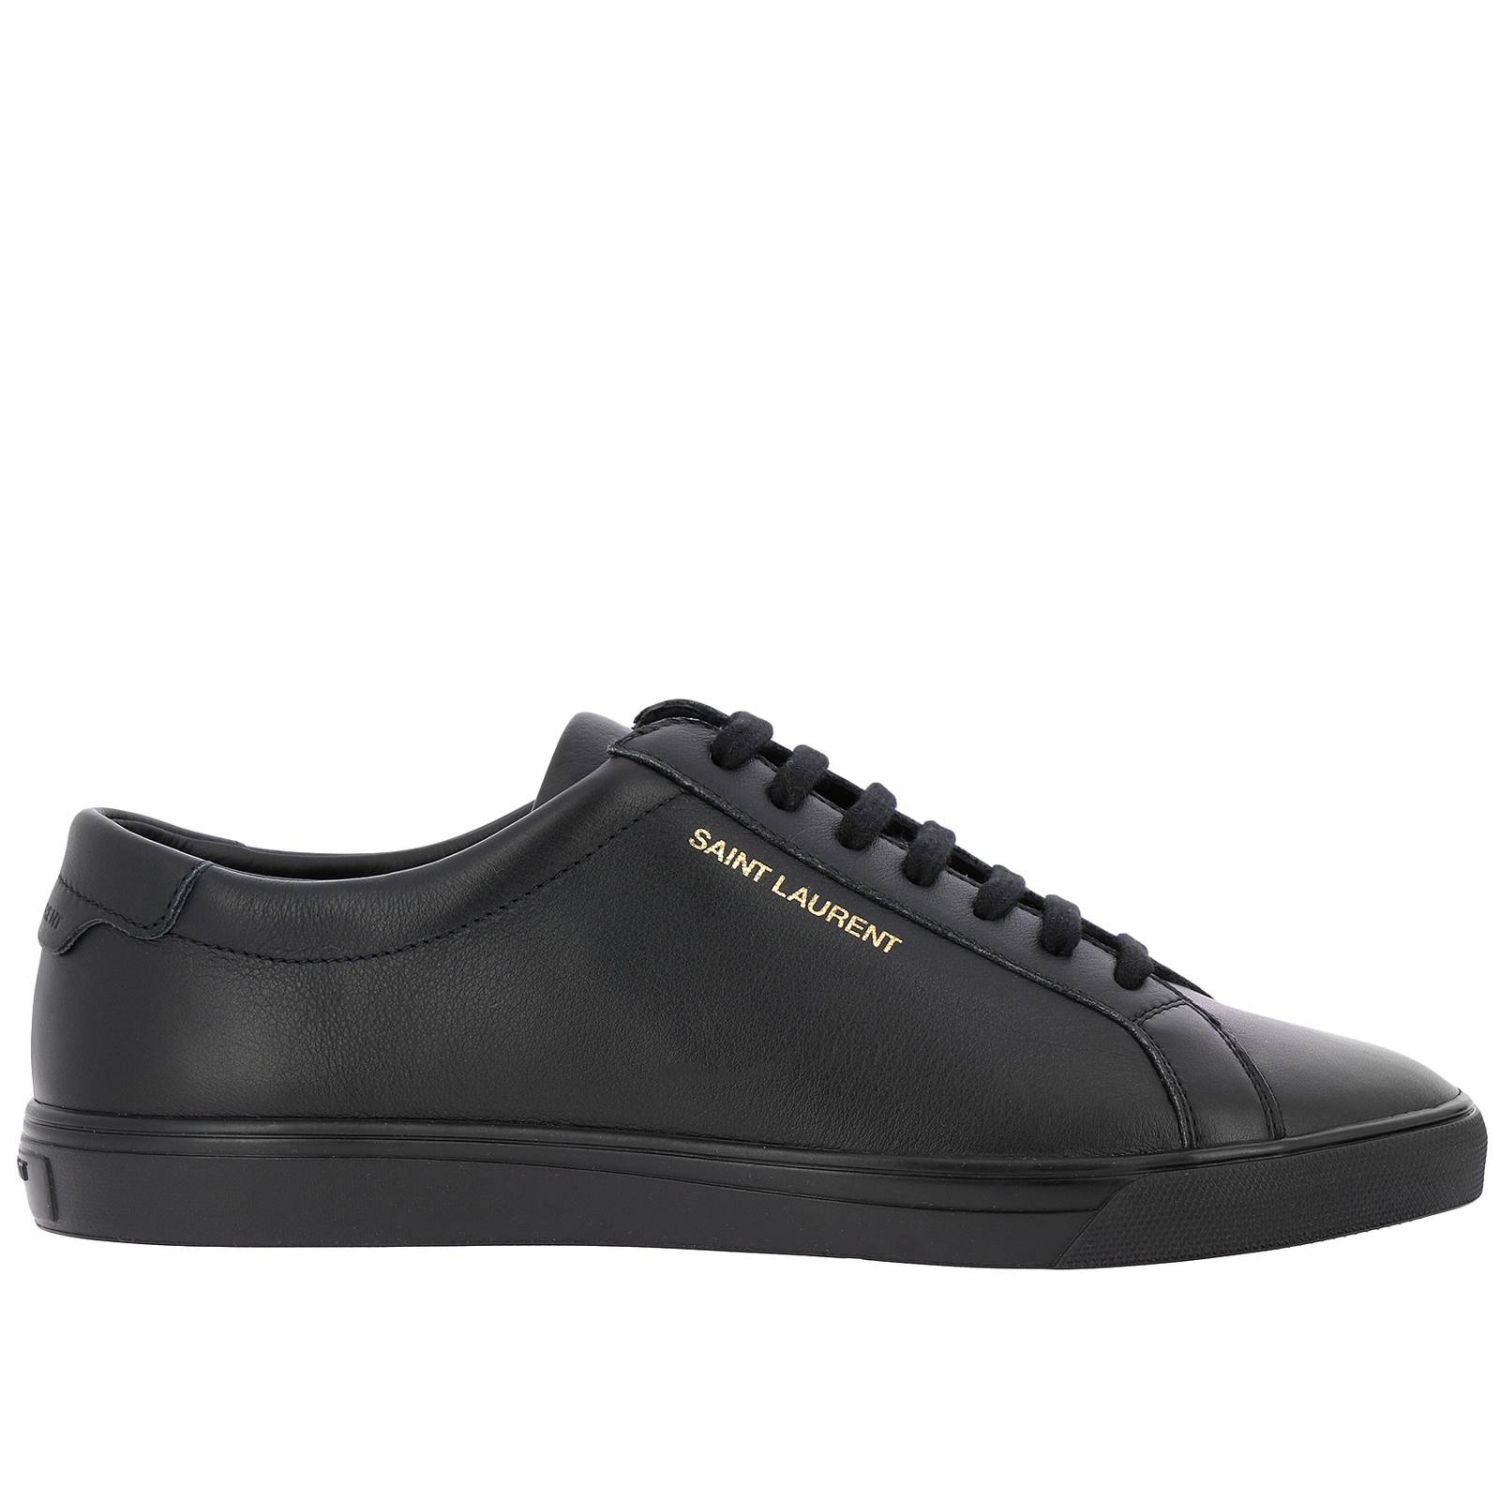 Saint Laurent Outlet: Shoes men | Sneakers Saint Laurent Men Black ...